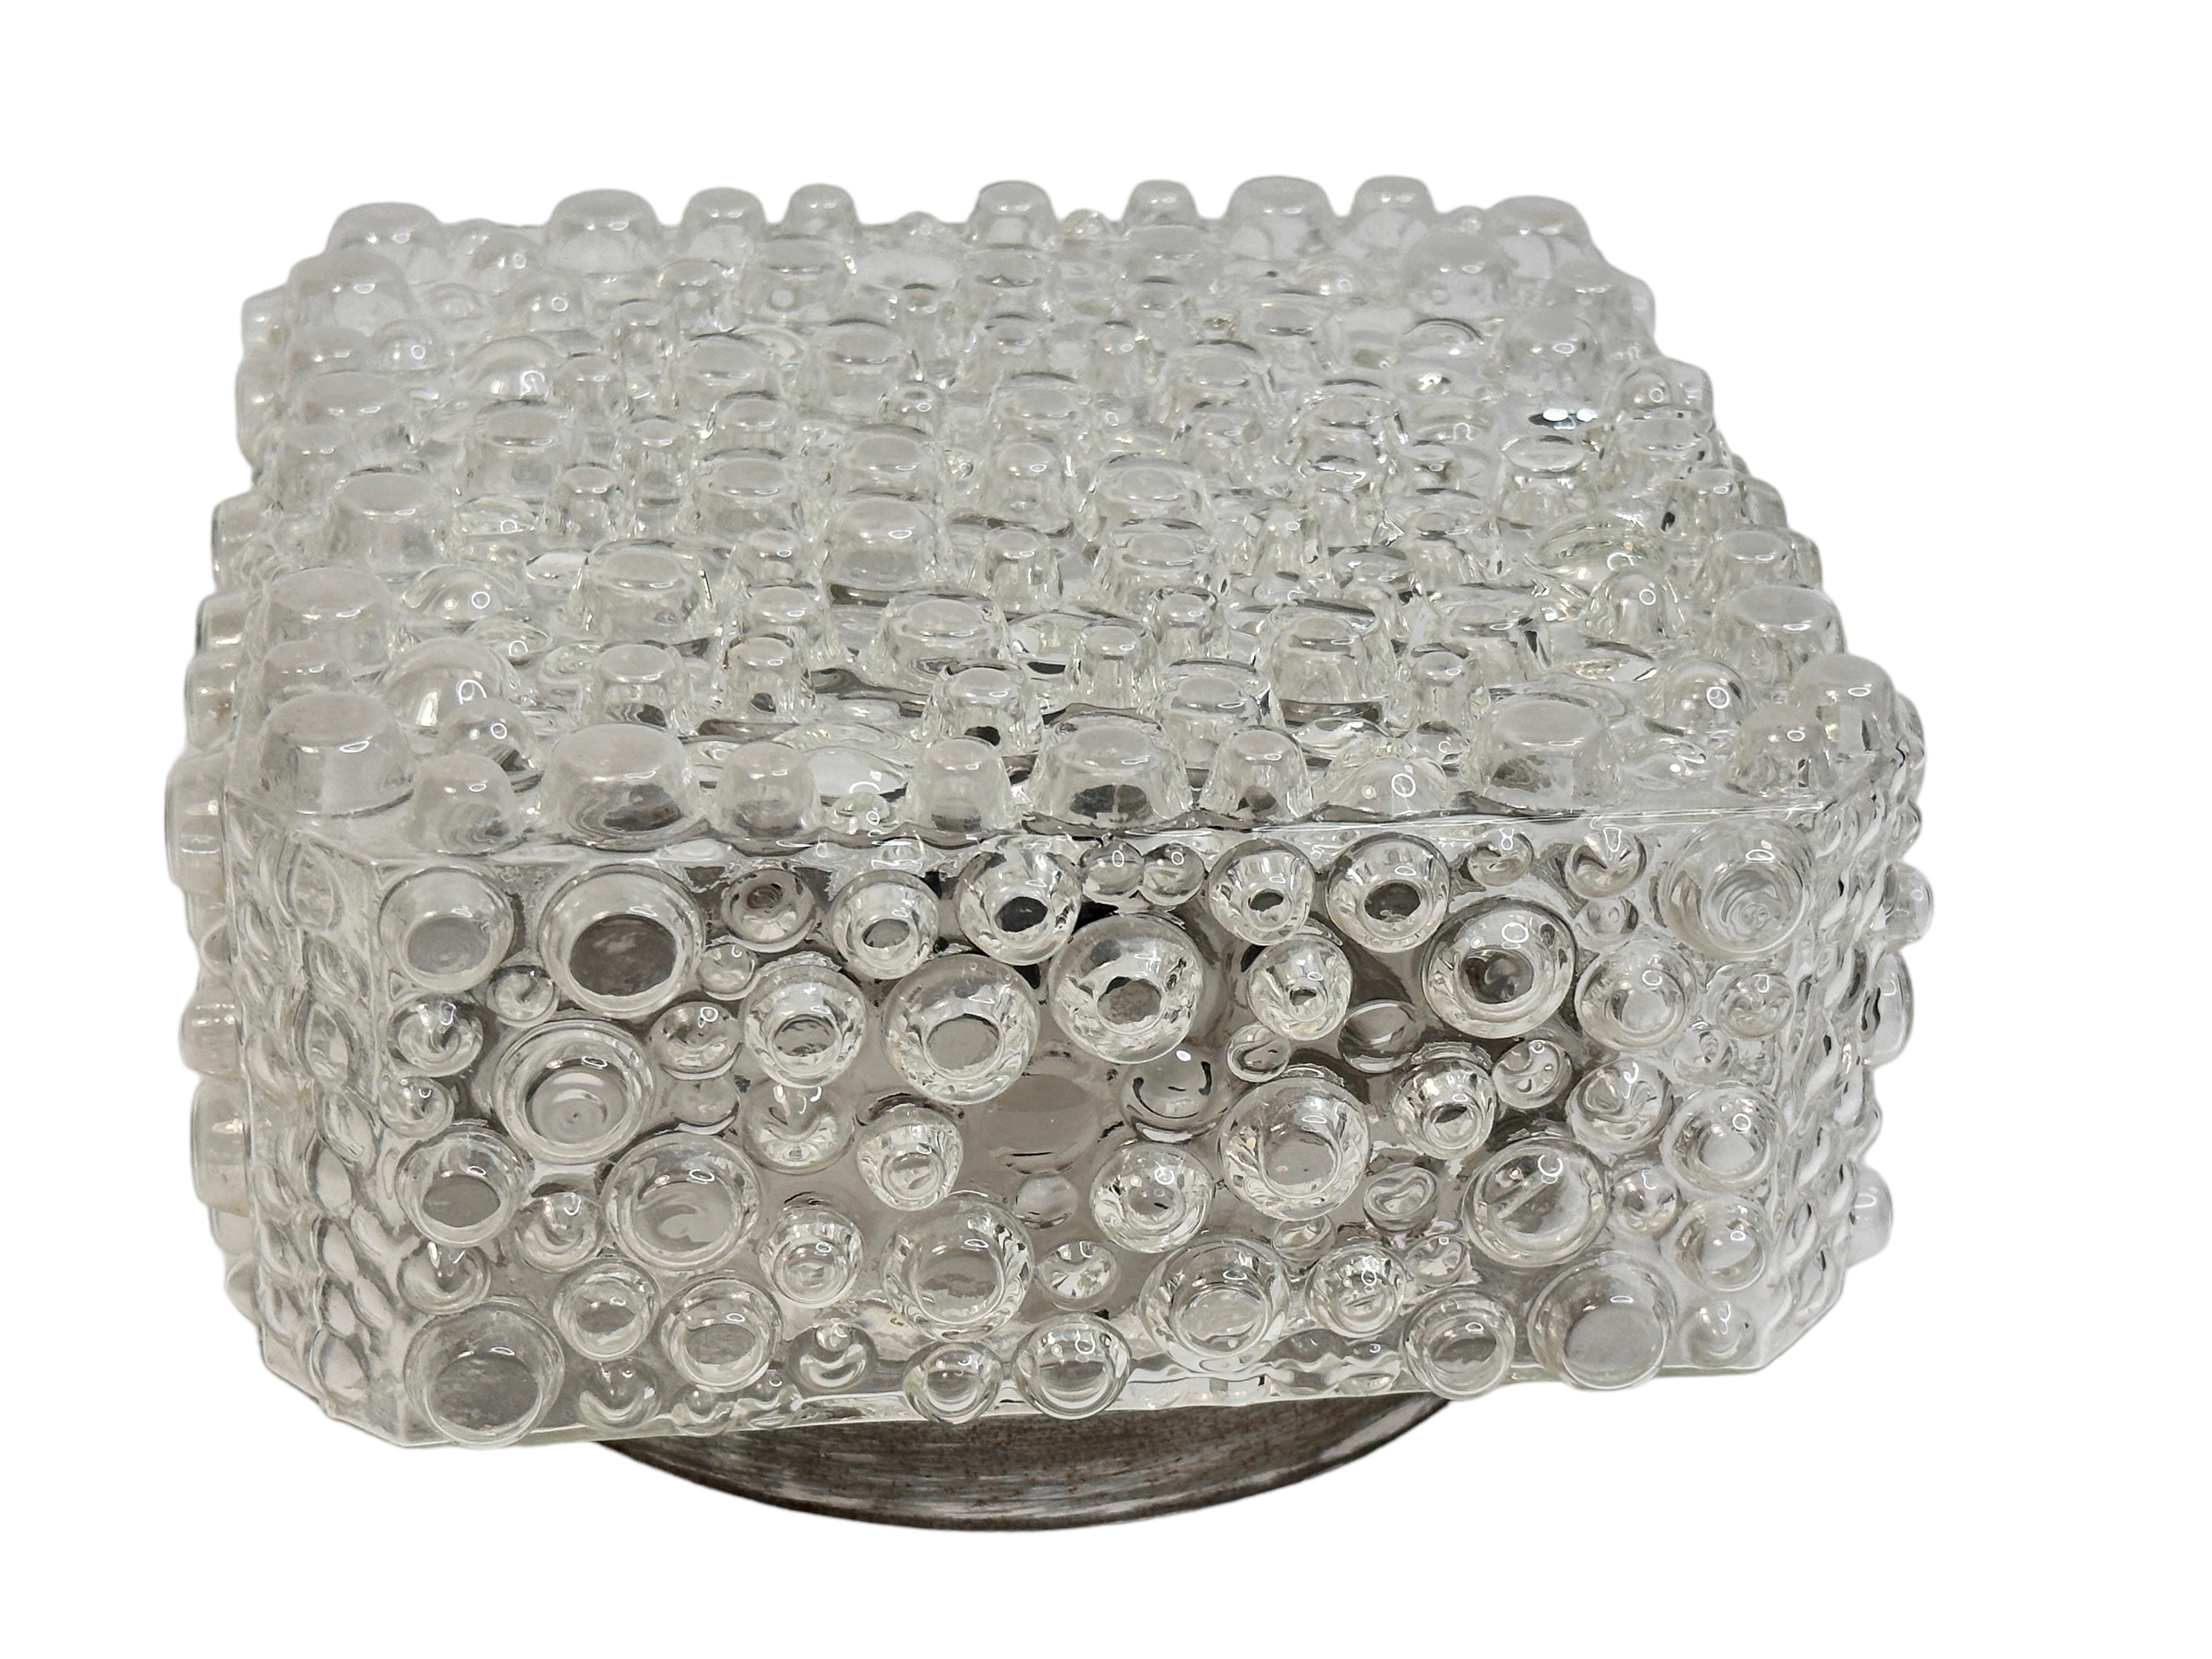 Belle bulle ou petit cercle en verre encastré. Fabriqué en Allemagne dans les années 1960. Magnifique verre texturé encastré avec fixation en métal. Le verre a un design très mignon. Le luminaire nécessite une ampoule européenne E14 / 110 Volt